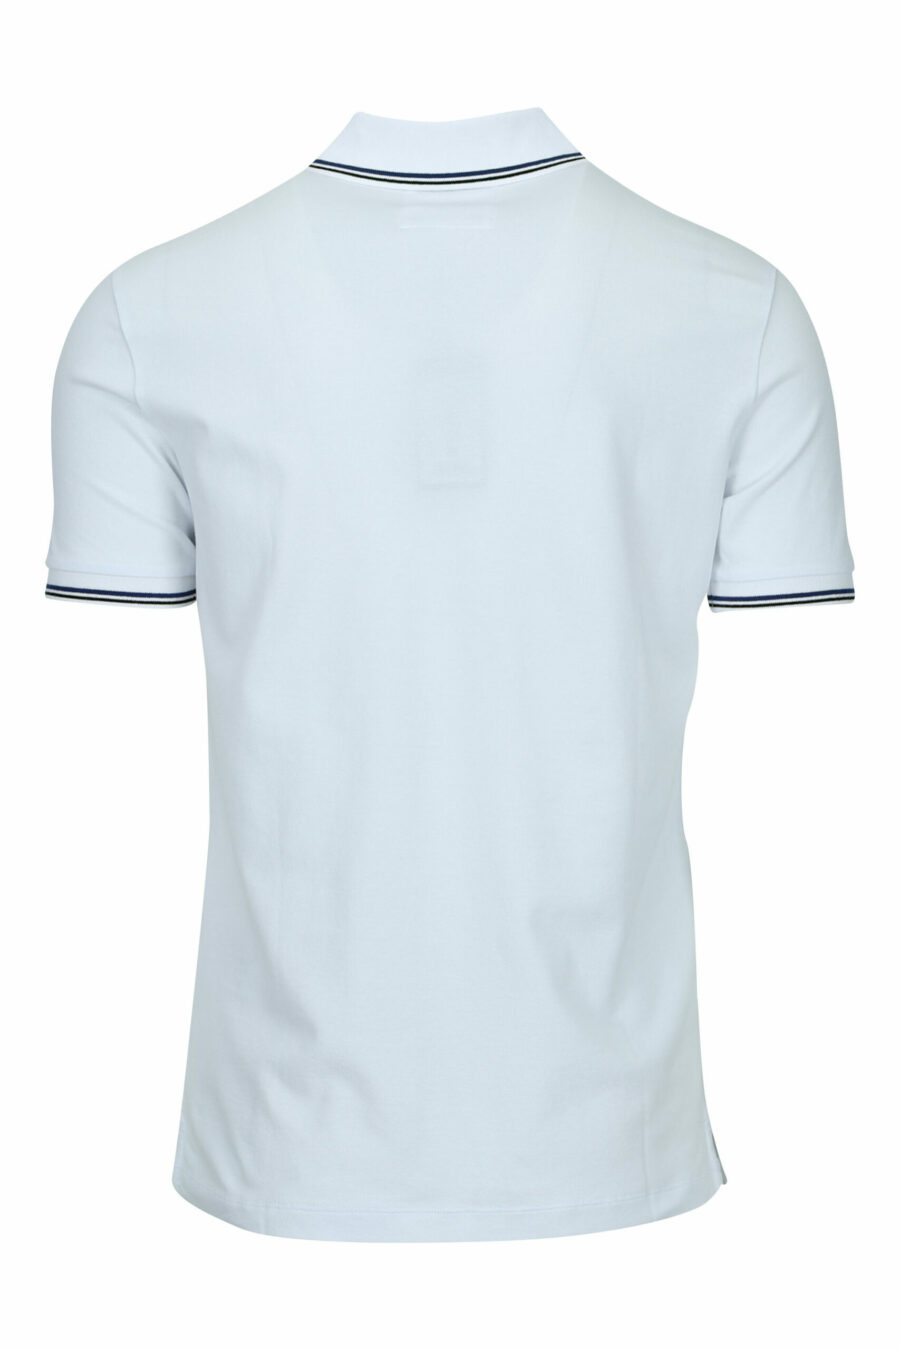 Weißes gestricktes Poloshirt mit gestreiftem Kragen und Mini-Adler-Logo - 8056861420442 1 skaliert